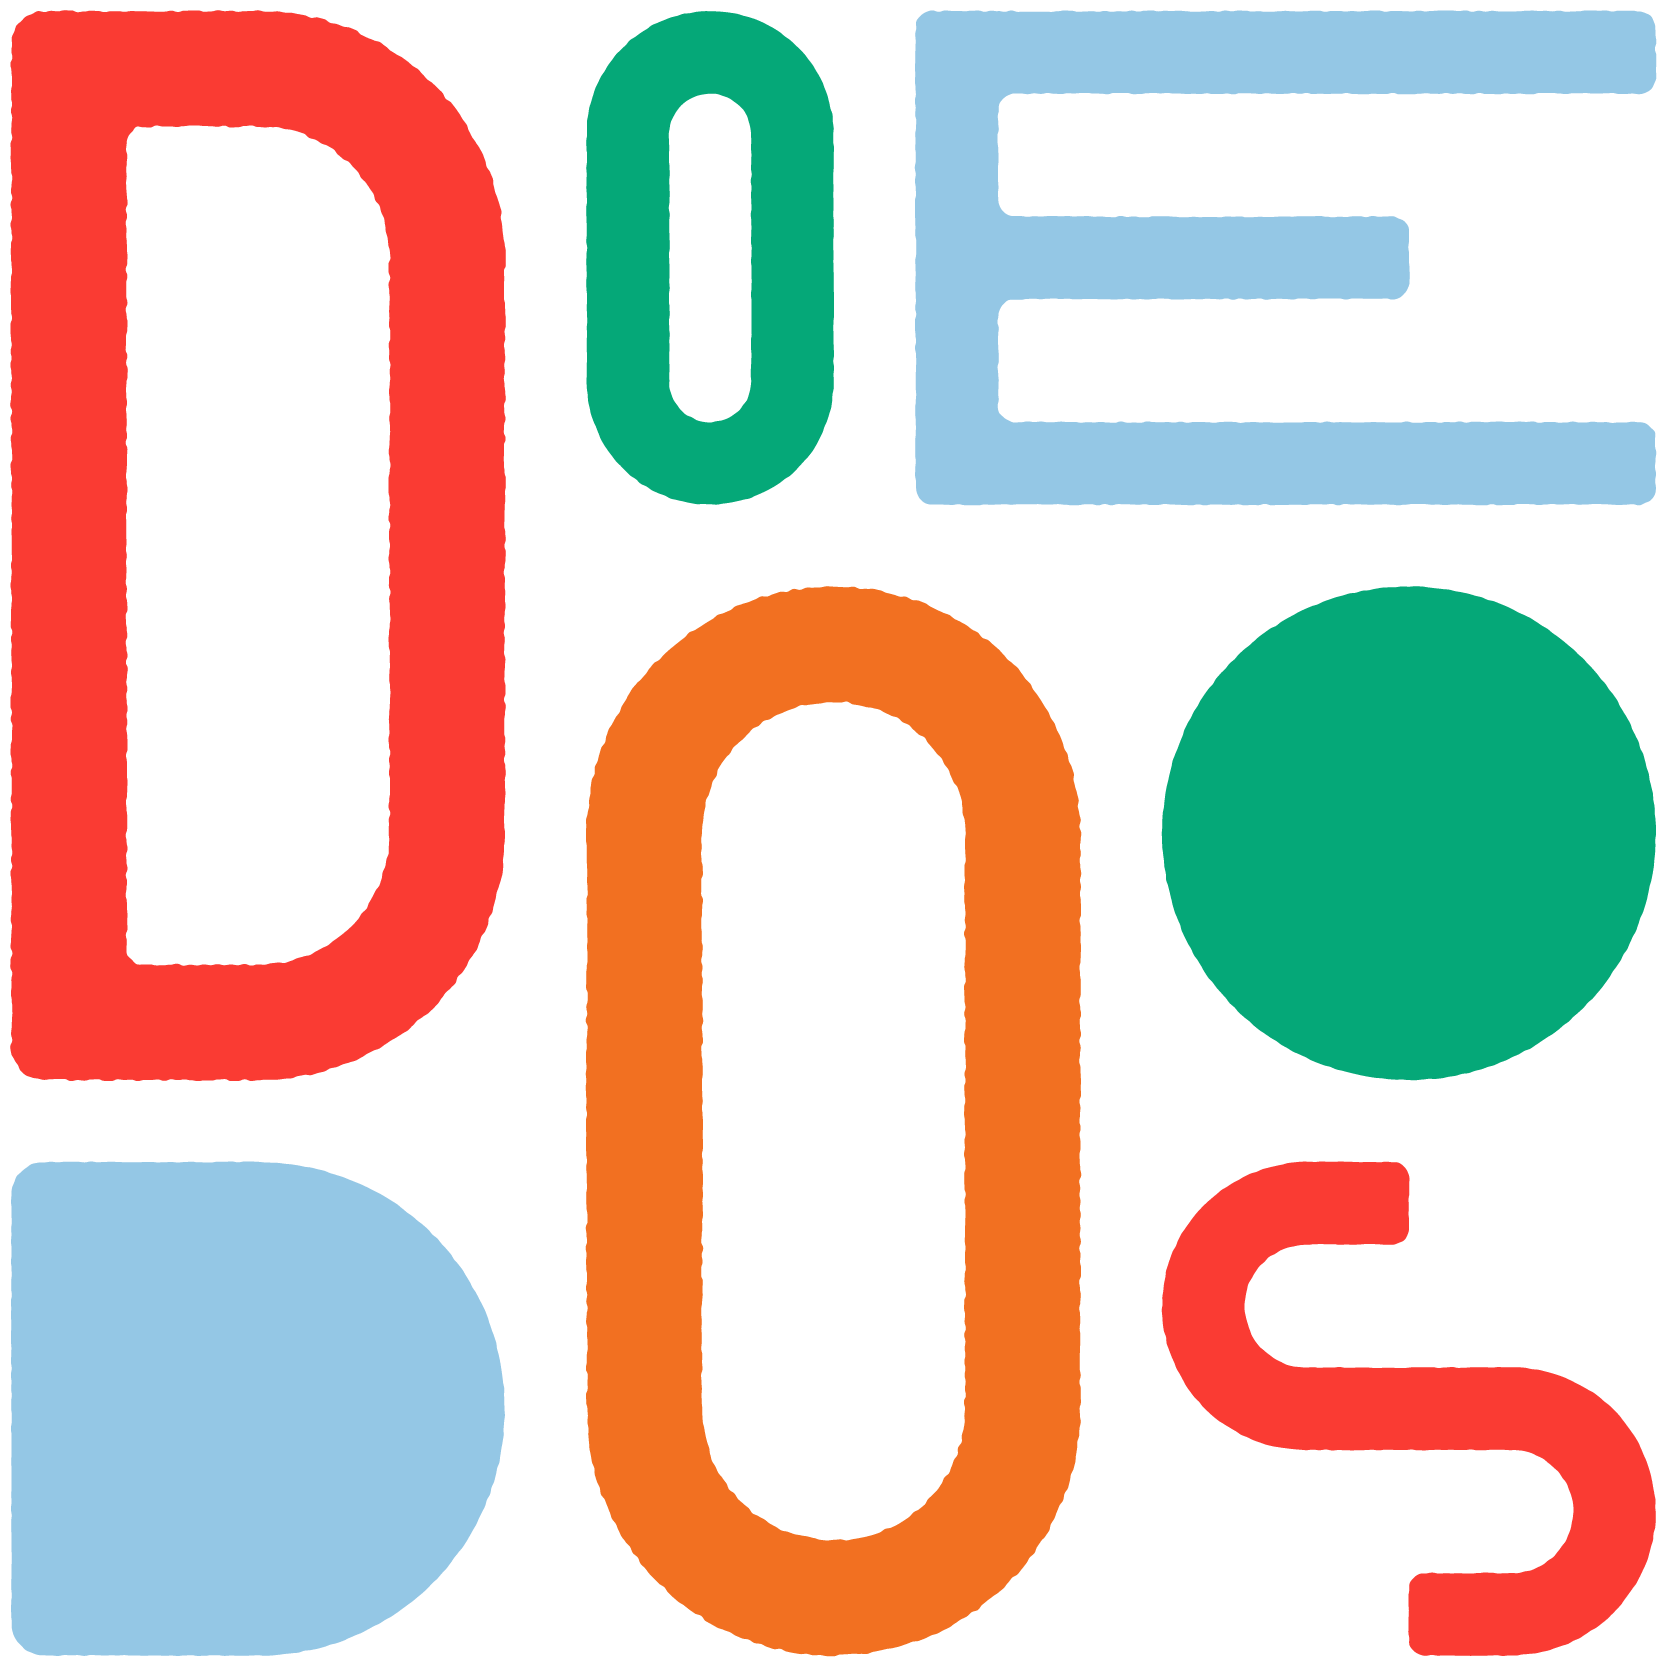 DoeDoos